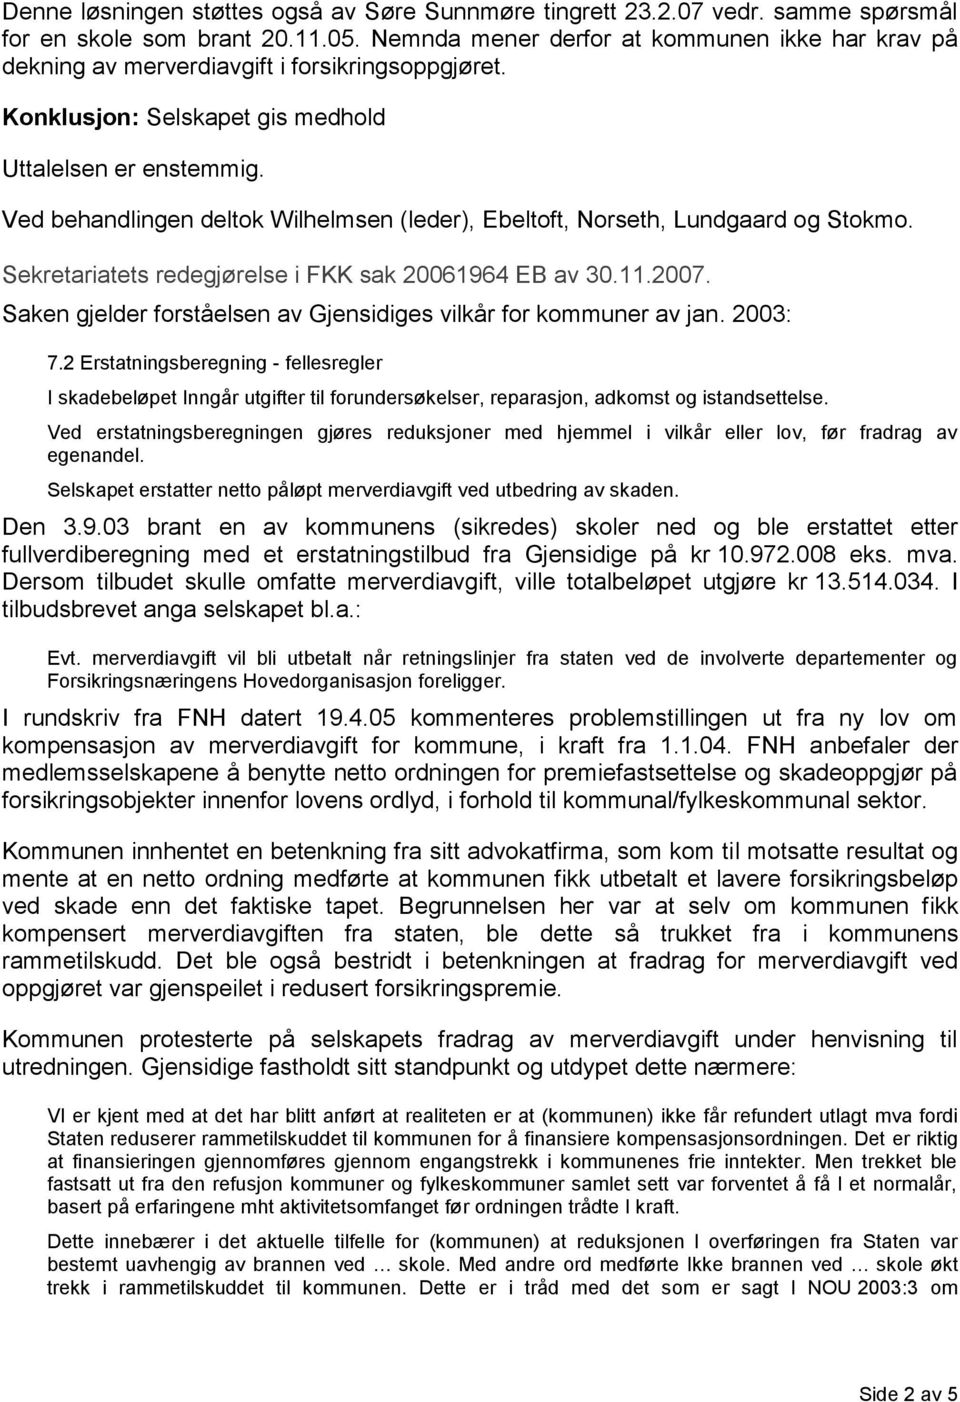 Ved behandlingen deltok Wilhelmsen (leder), Ebeltoft, Norseth, Lundgaard og Stokmo. Sekretariatets redegjørelse i FKK sak 20061964 EB av 30.11.2007.